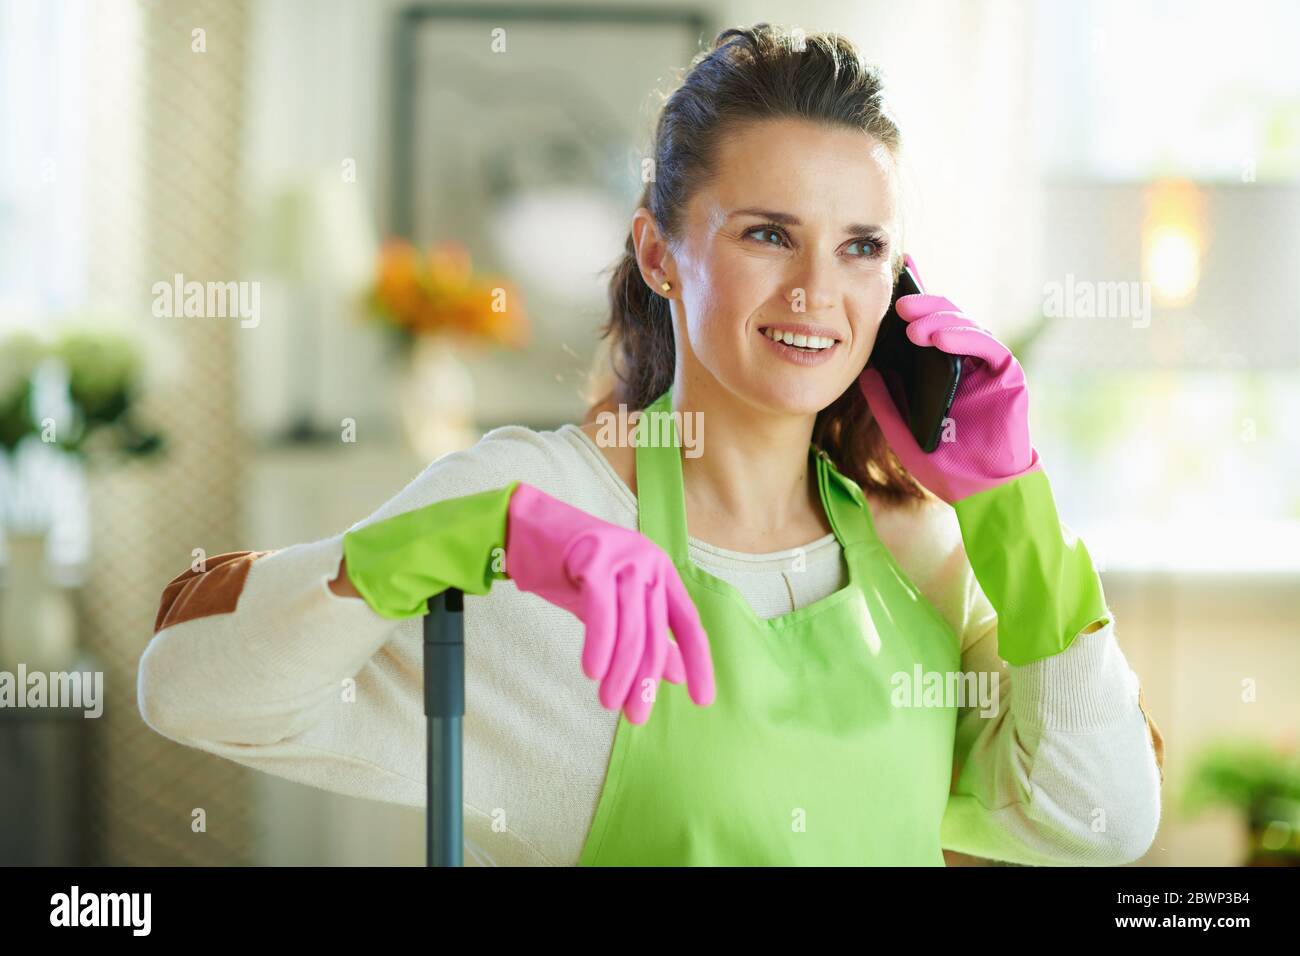 jeune femme souriante avec un tablier vert et des gants en caoutchouc rose avec une vadrouille parlant sur un téléphone cellulaire dans le salon moderne par beau temps. Banque D'Images